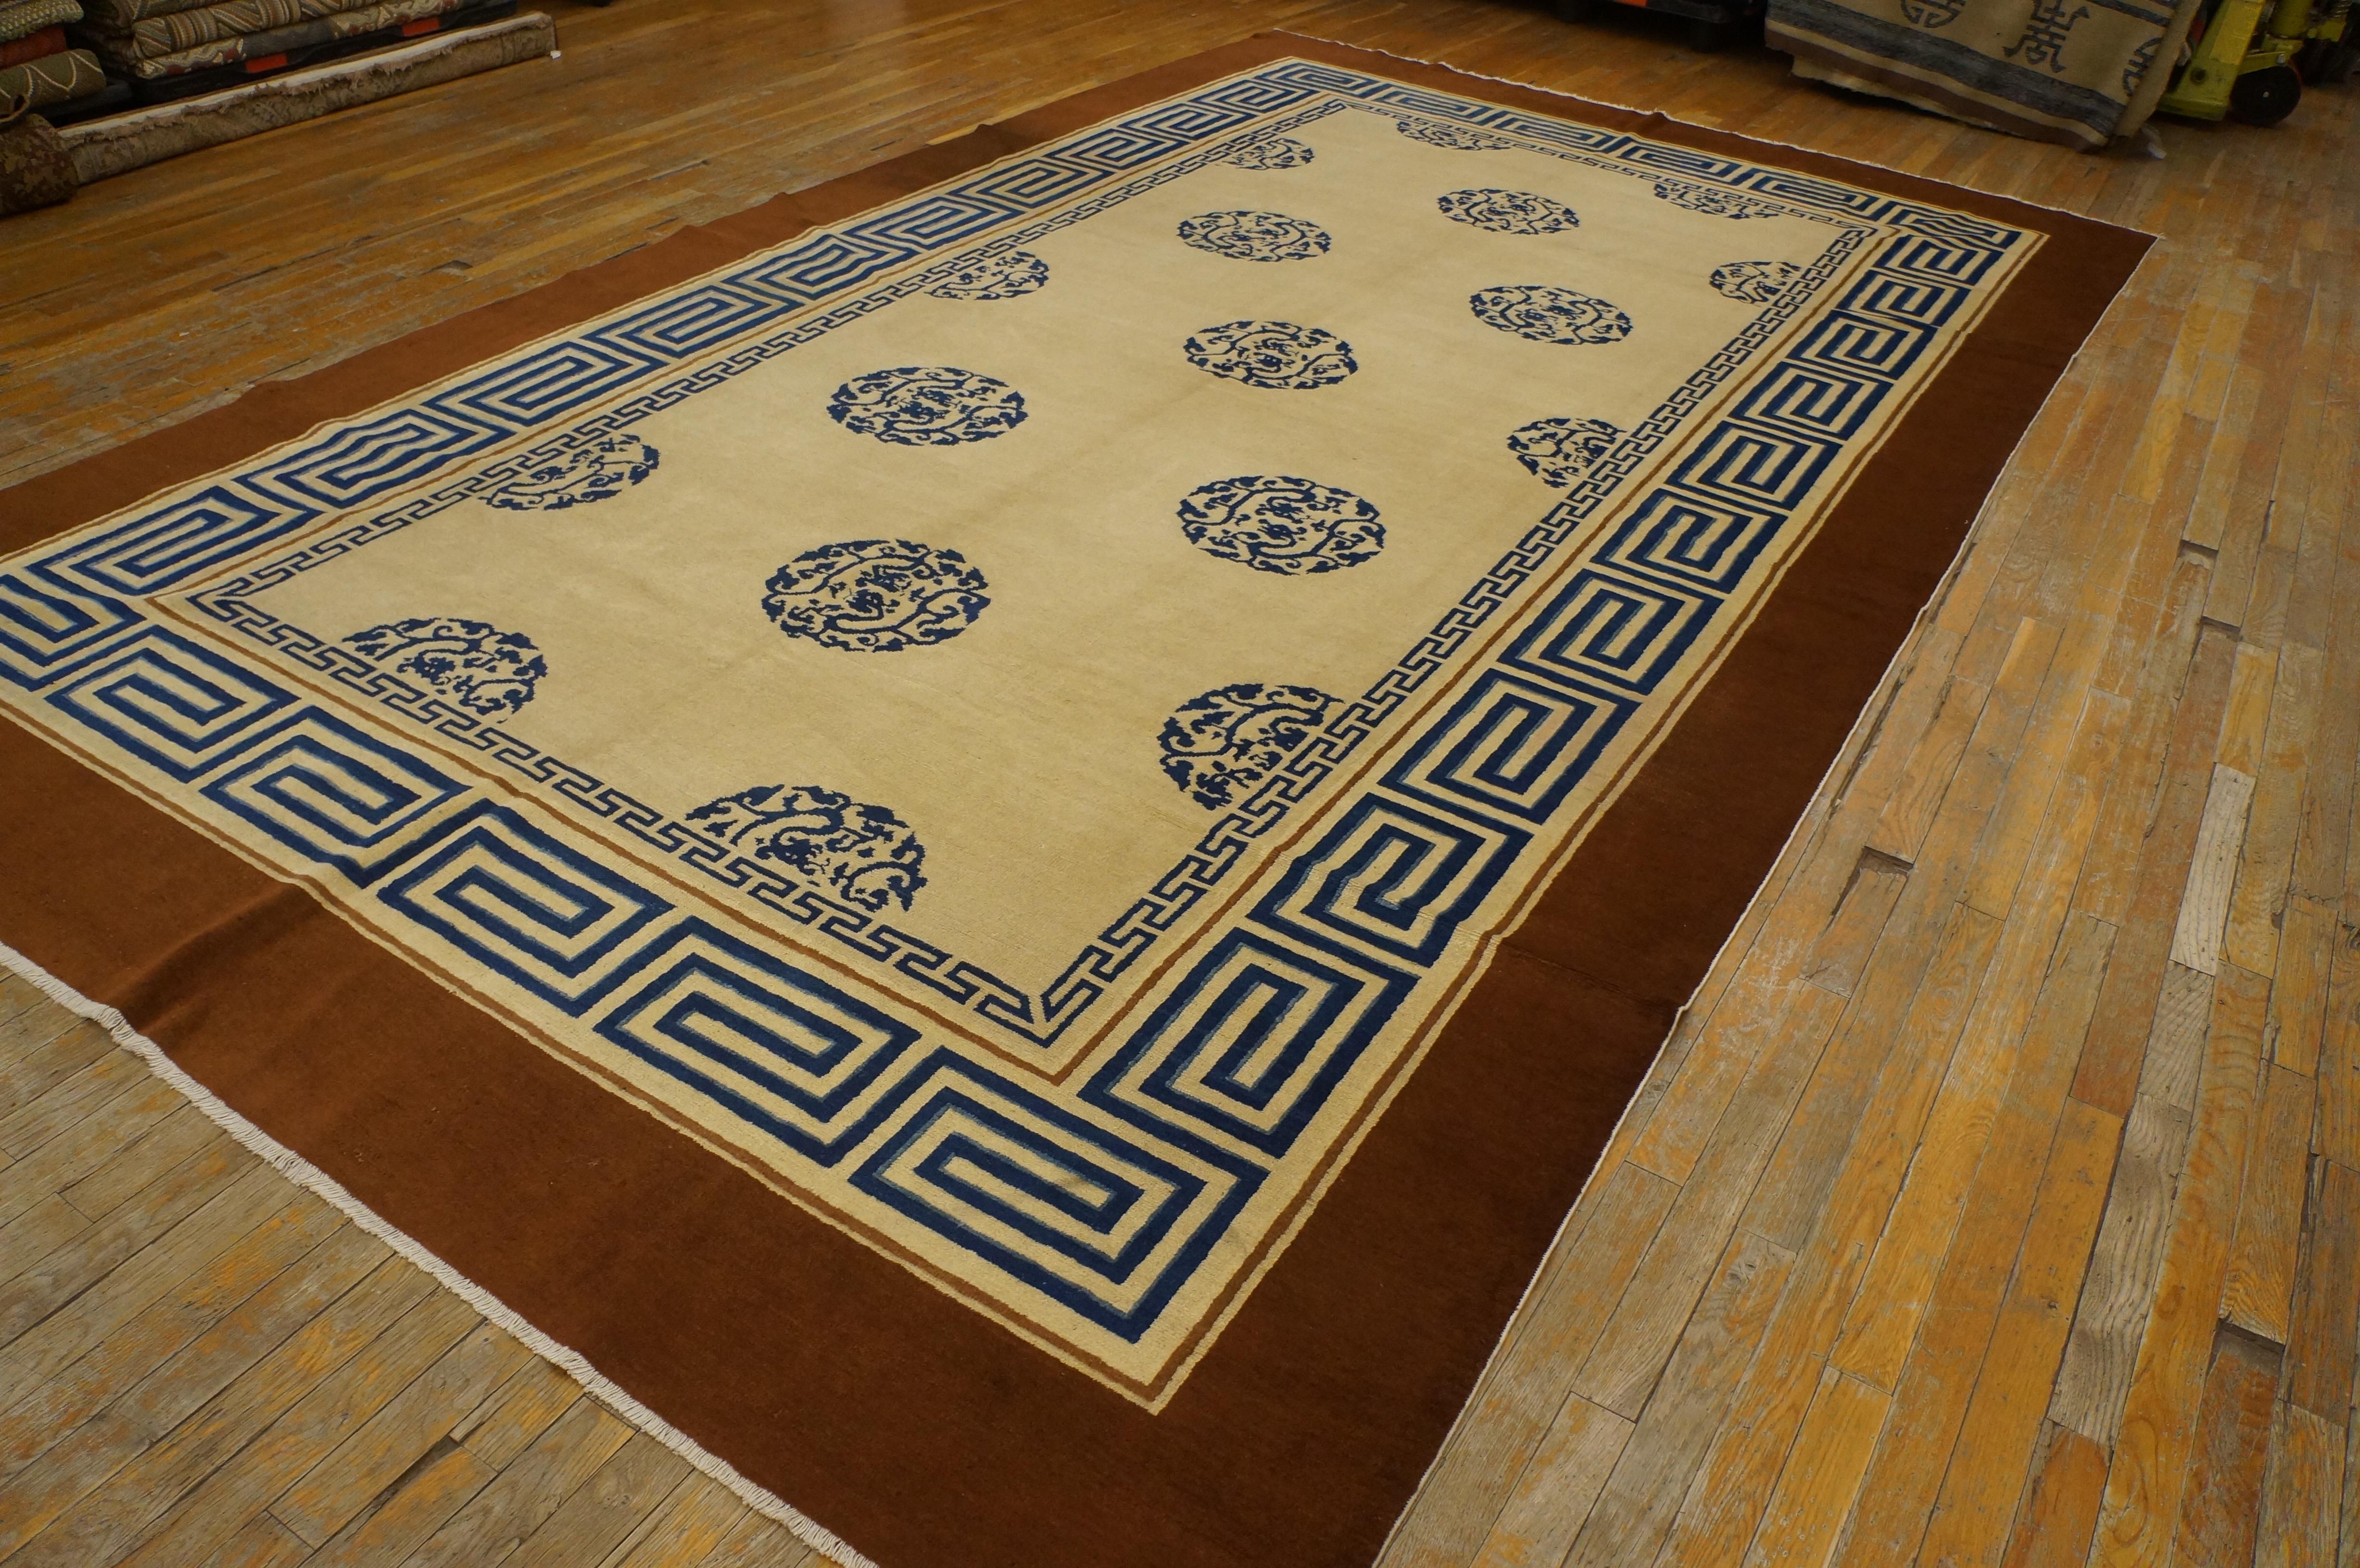 Antiker chinesischer Peking-Teppich aus dem Jahr 1870 
Maße: 8' x 13'6